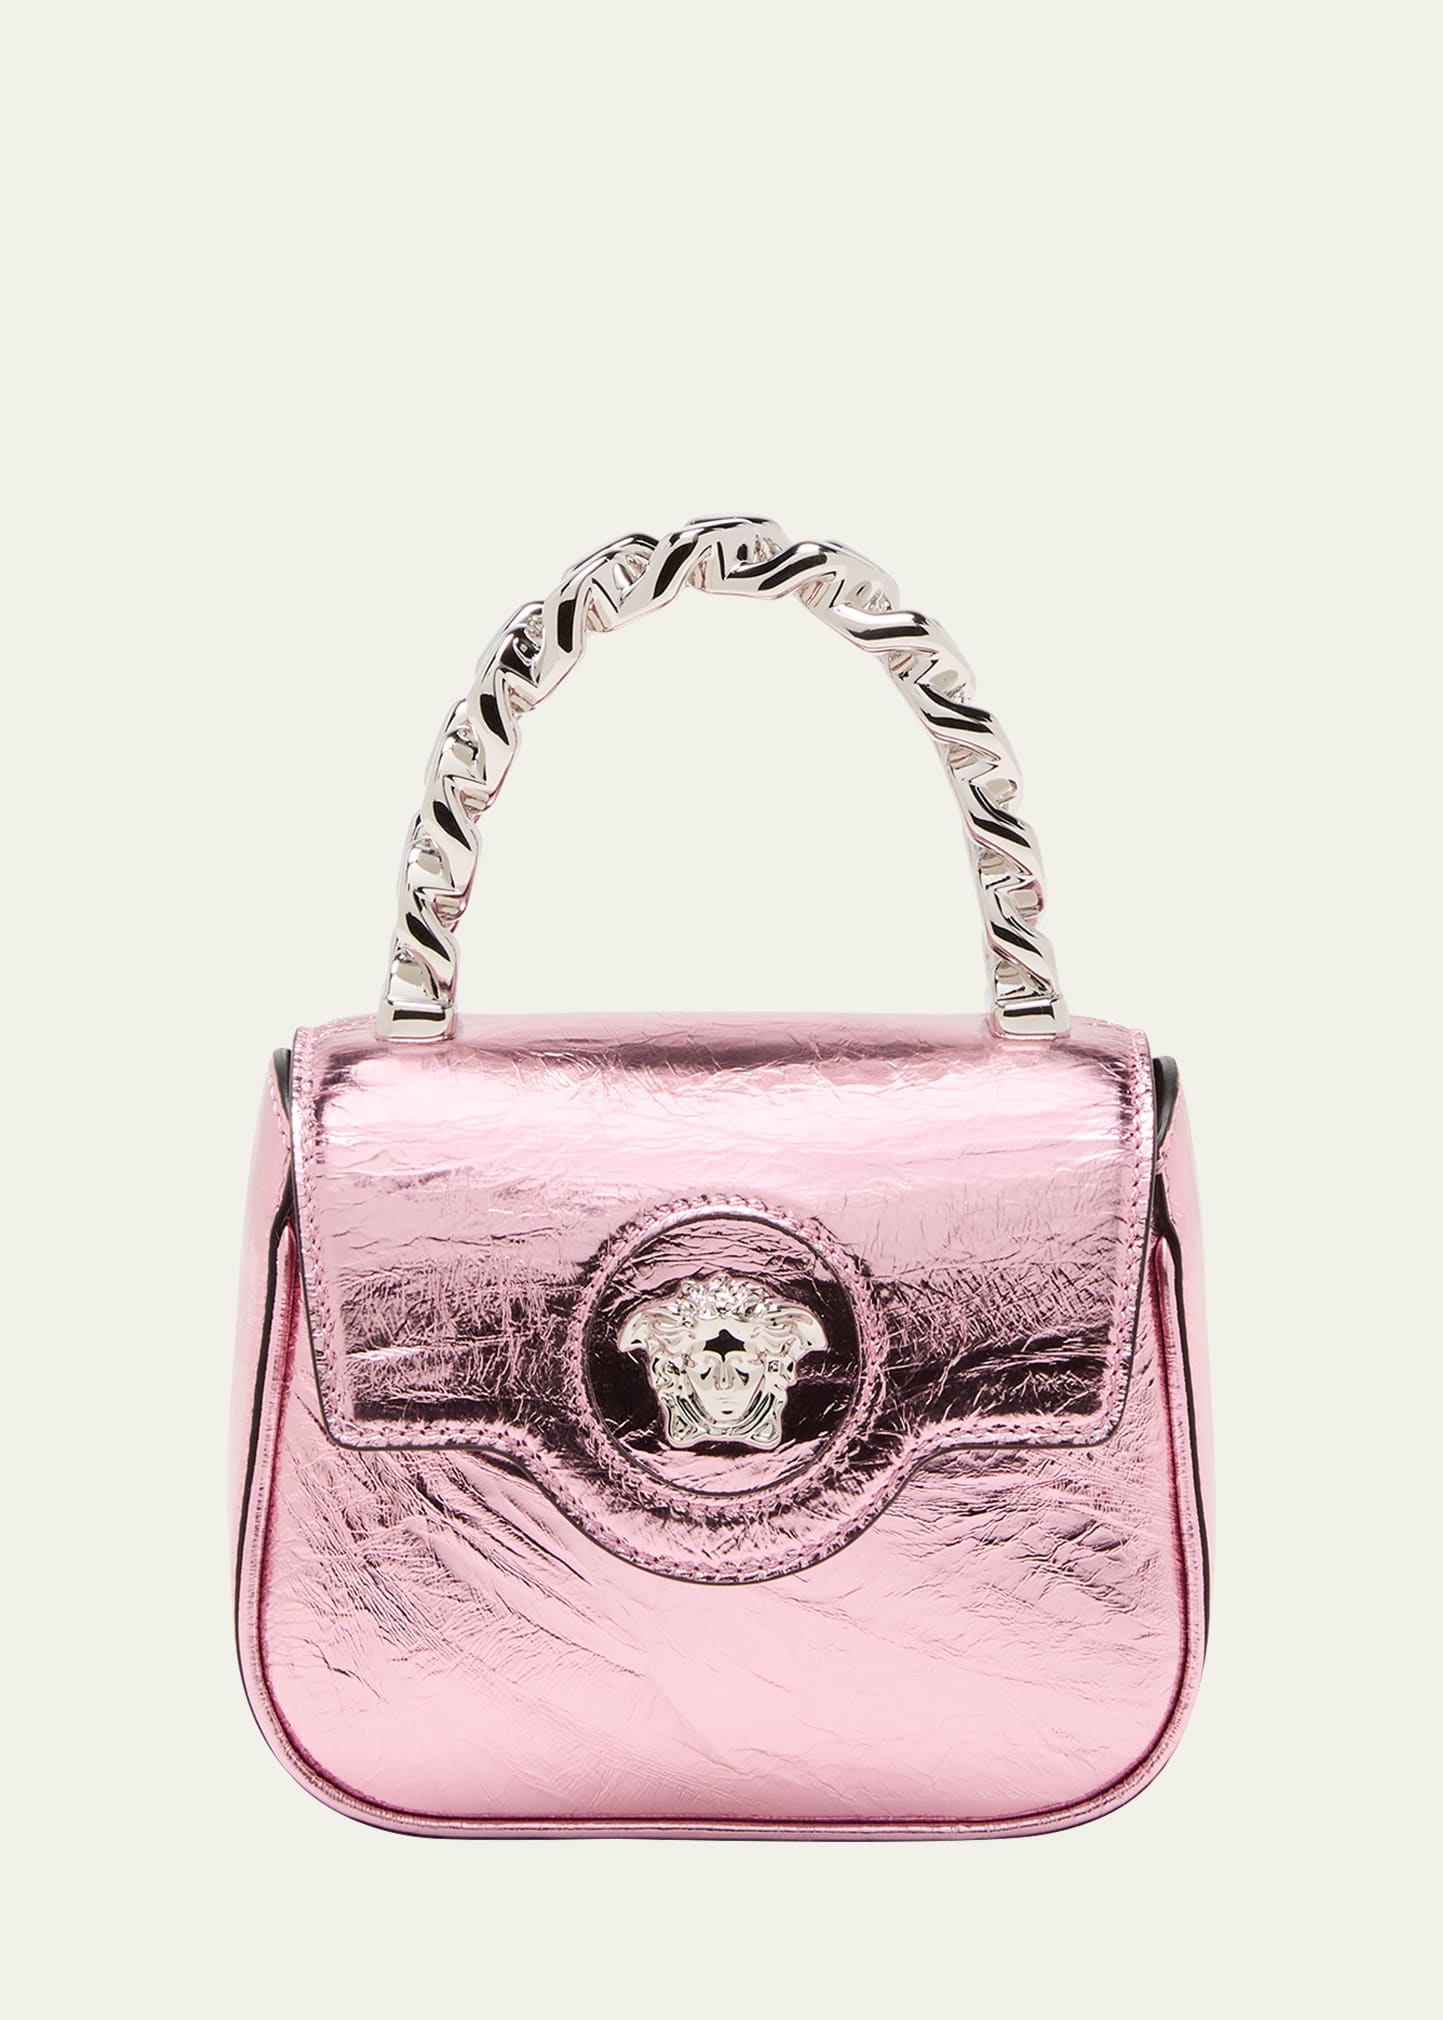 Versace - Metallic Leather 'La Medusa' Mini Bag